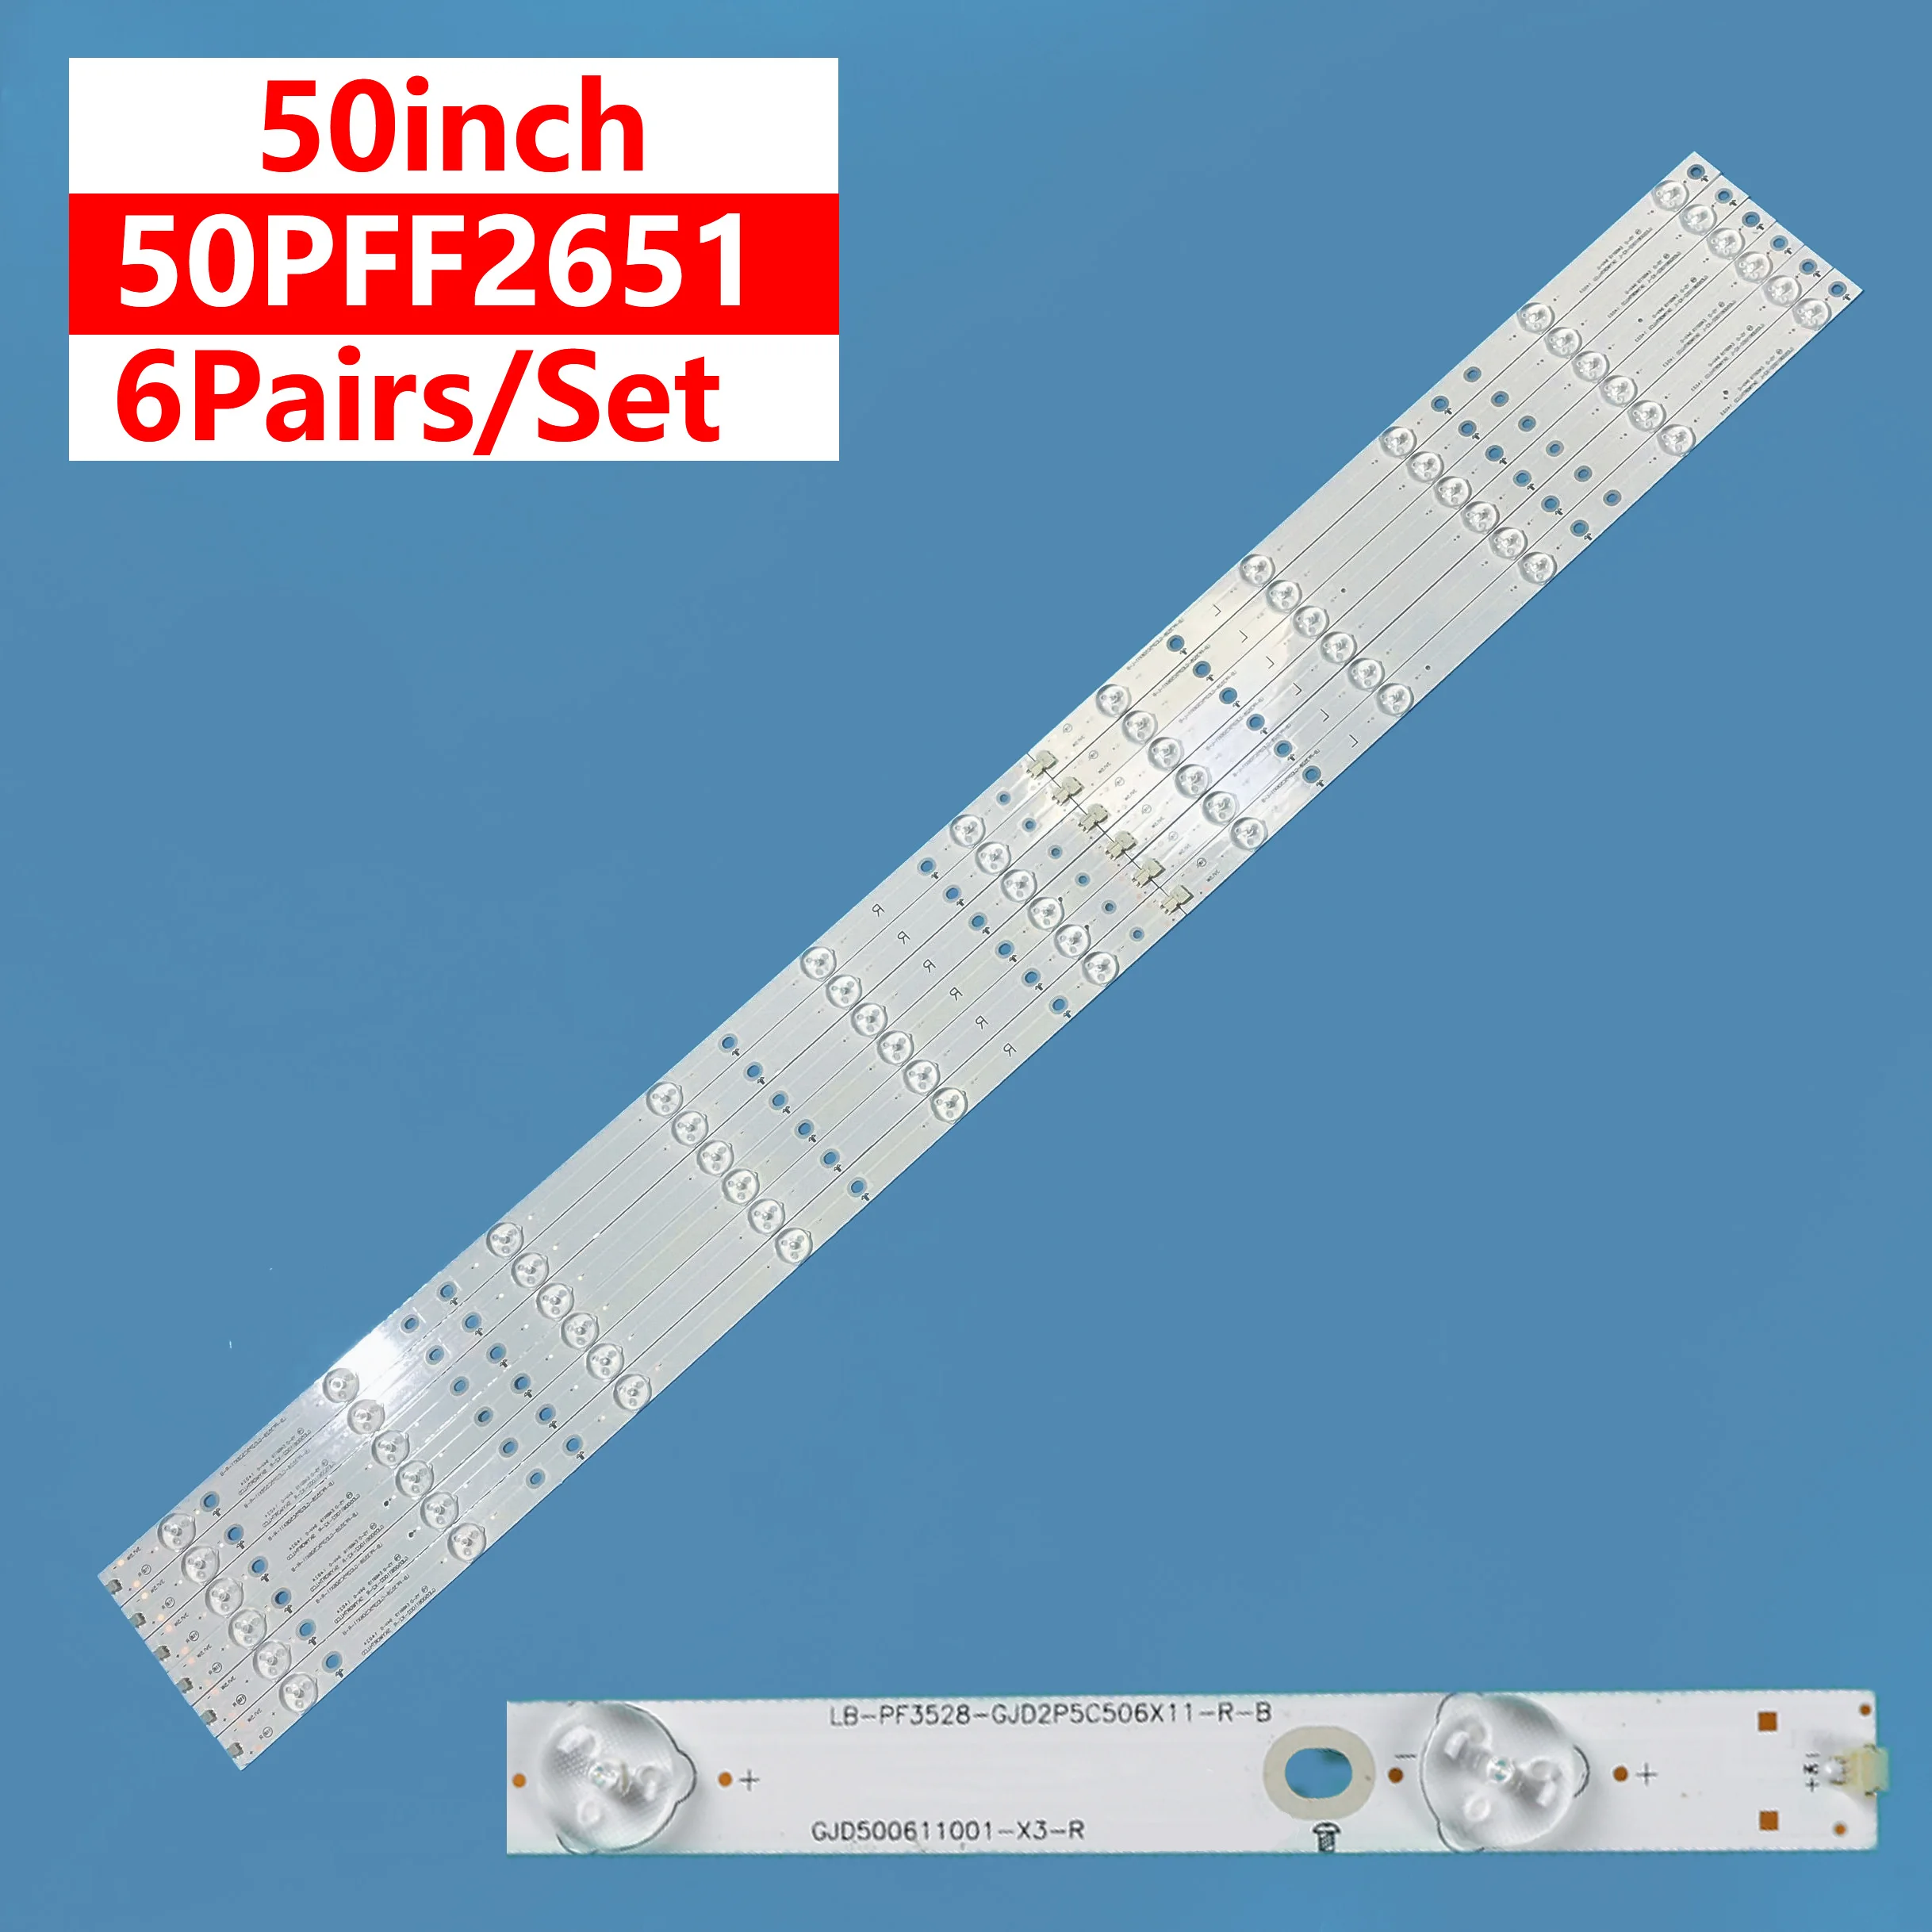 12Pcs/set New LED Backlight Bar Light Strip LB-PF3528-GJD2P5C506X11-L R-B For Philips TV 50inch 50PFF3/4750/T3 50PFF2651